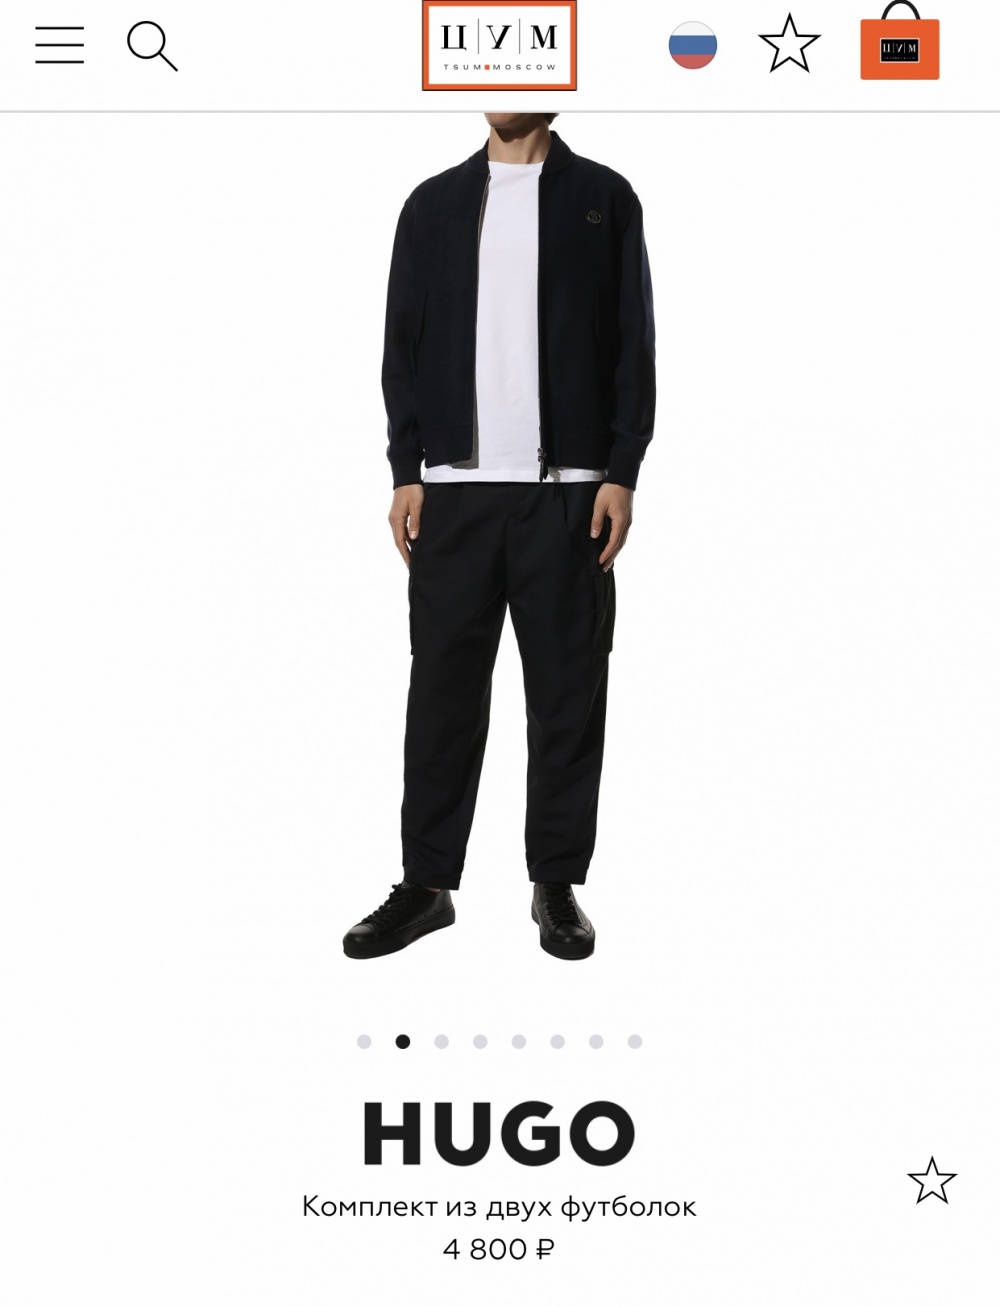 Hugo футболка s/m